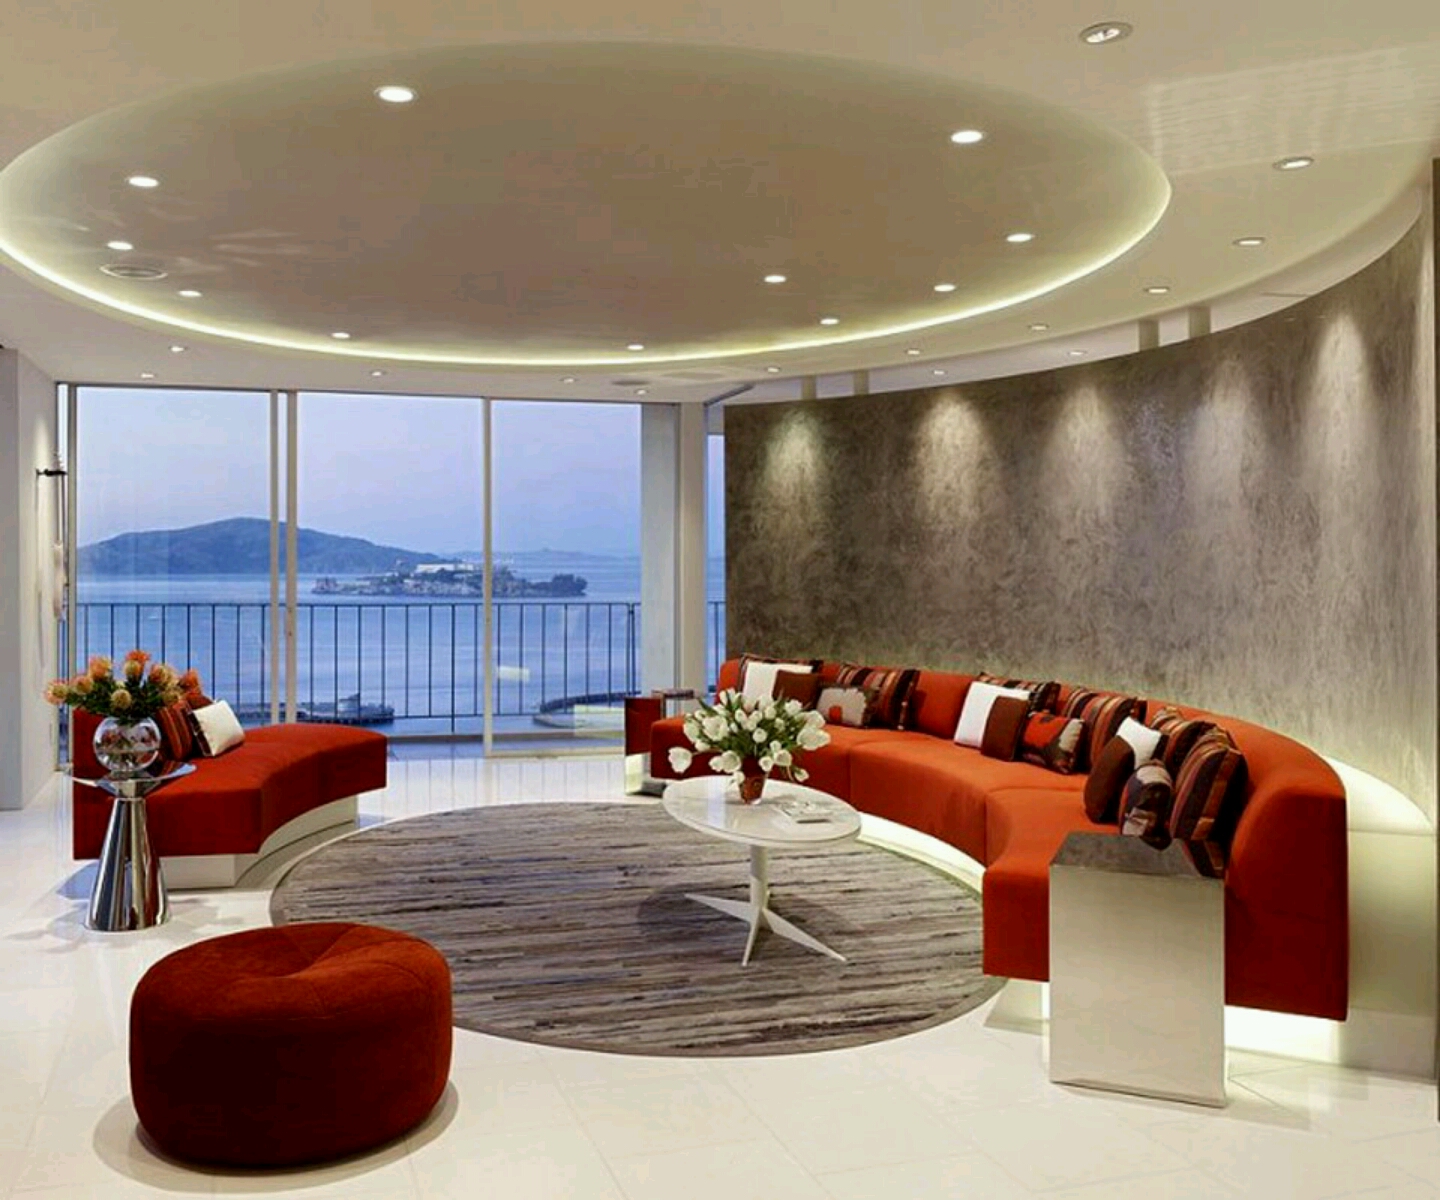 modern wallpaper designs for living room,interior design,room,living room,furniture,ceiling